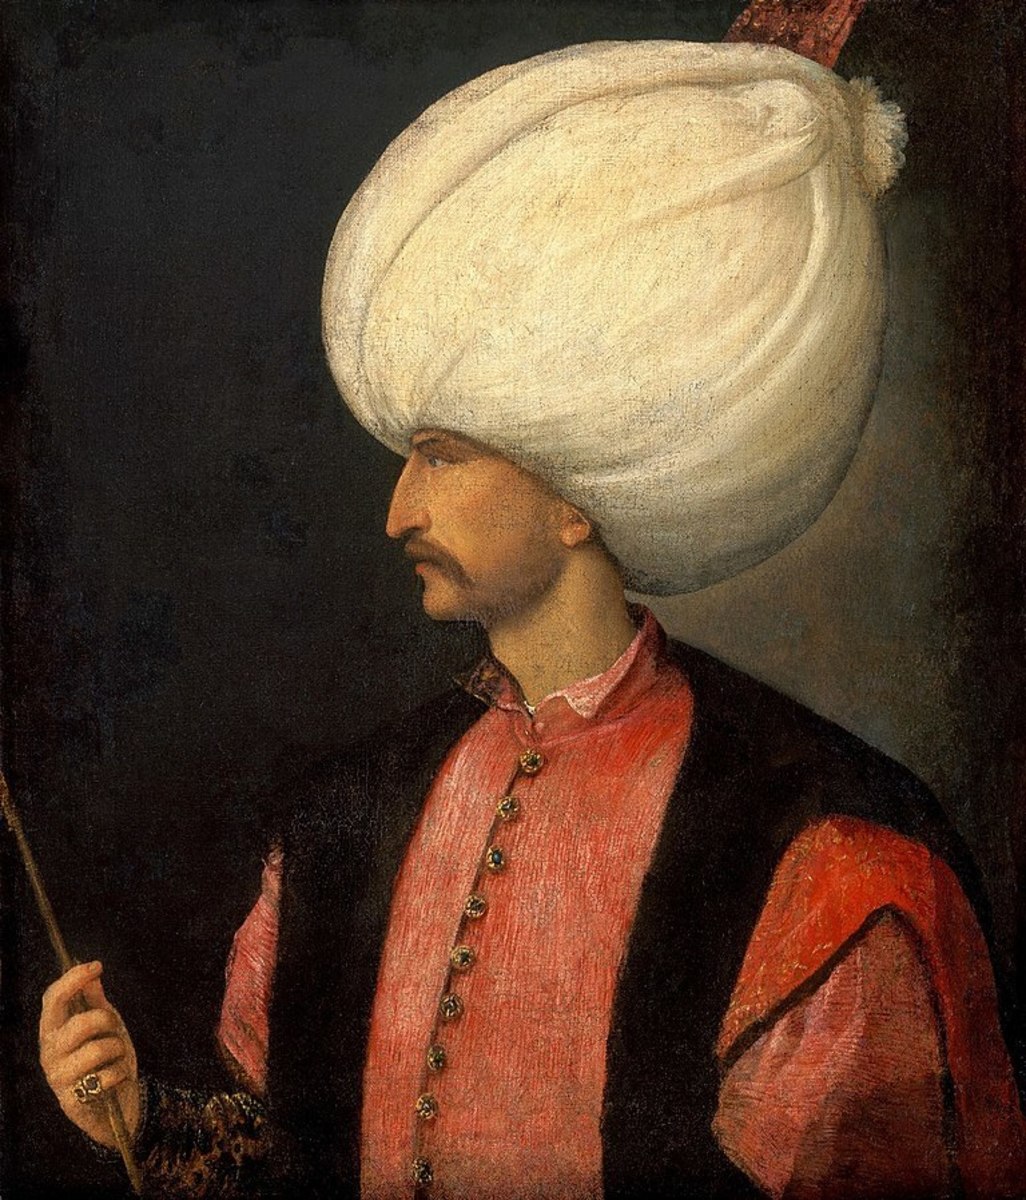 Sultan Suleiman in profile